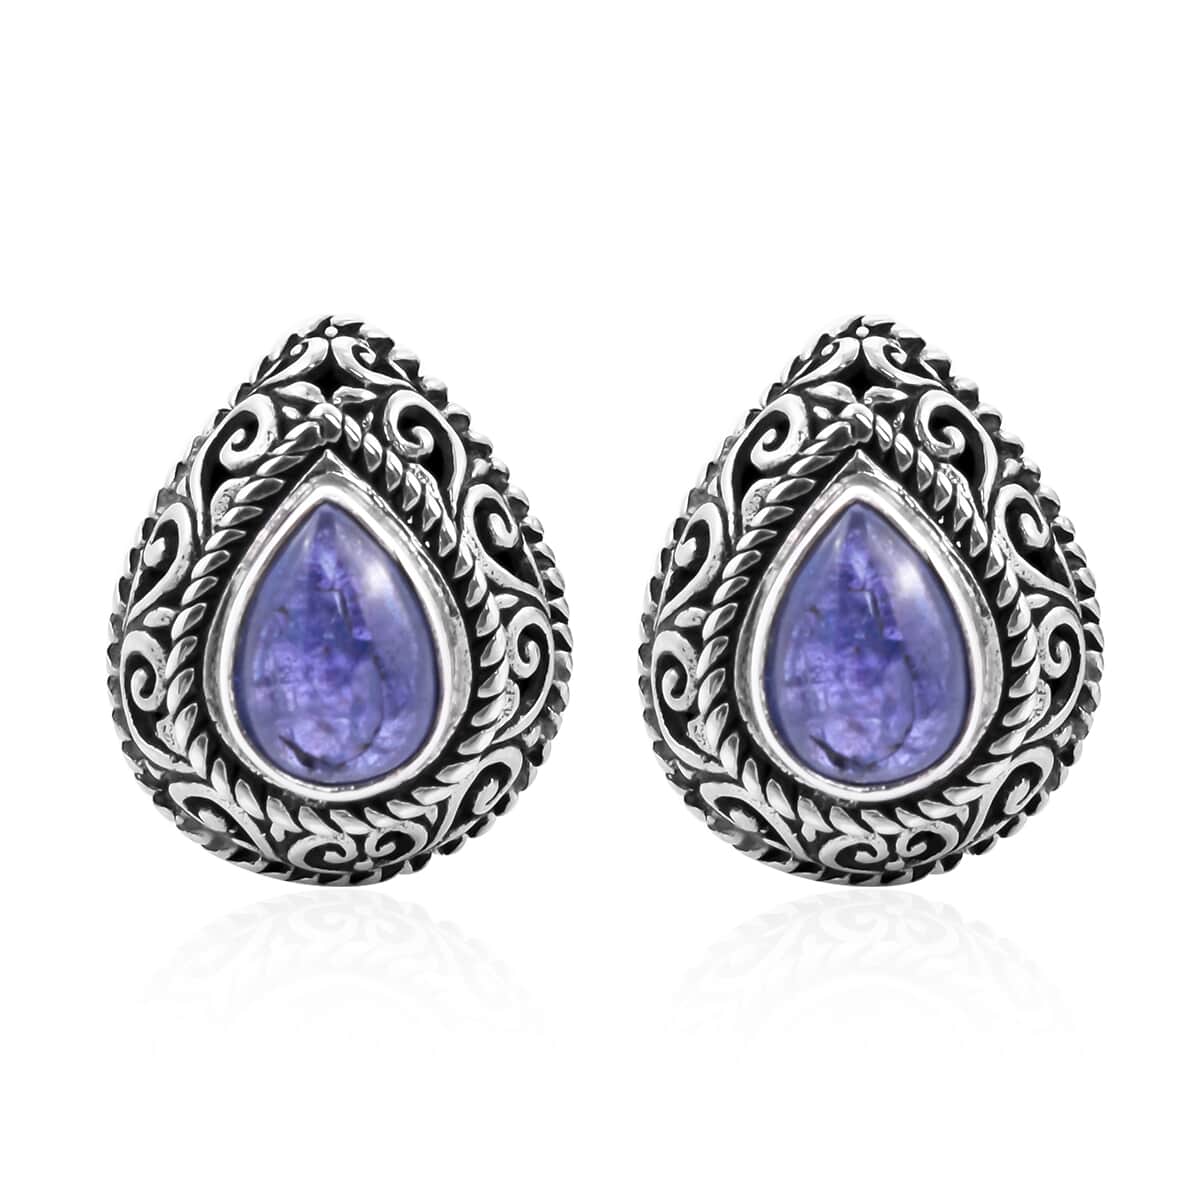 BALI LEGACY Tanzanite Stud Earrings in Sterling Silver 2.25 ctw image number 0